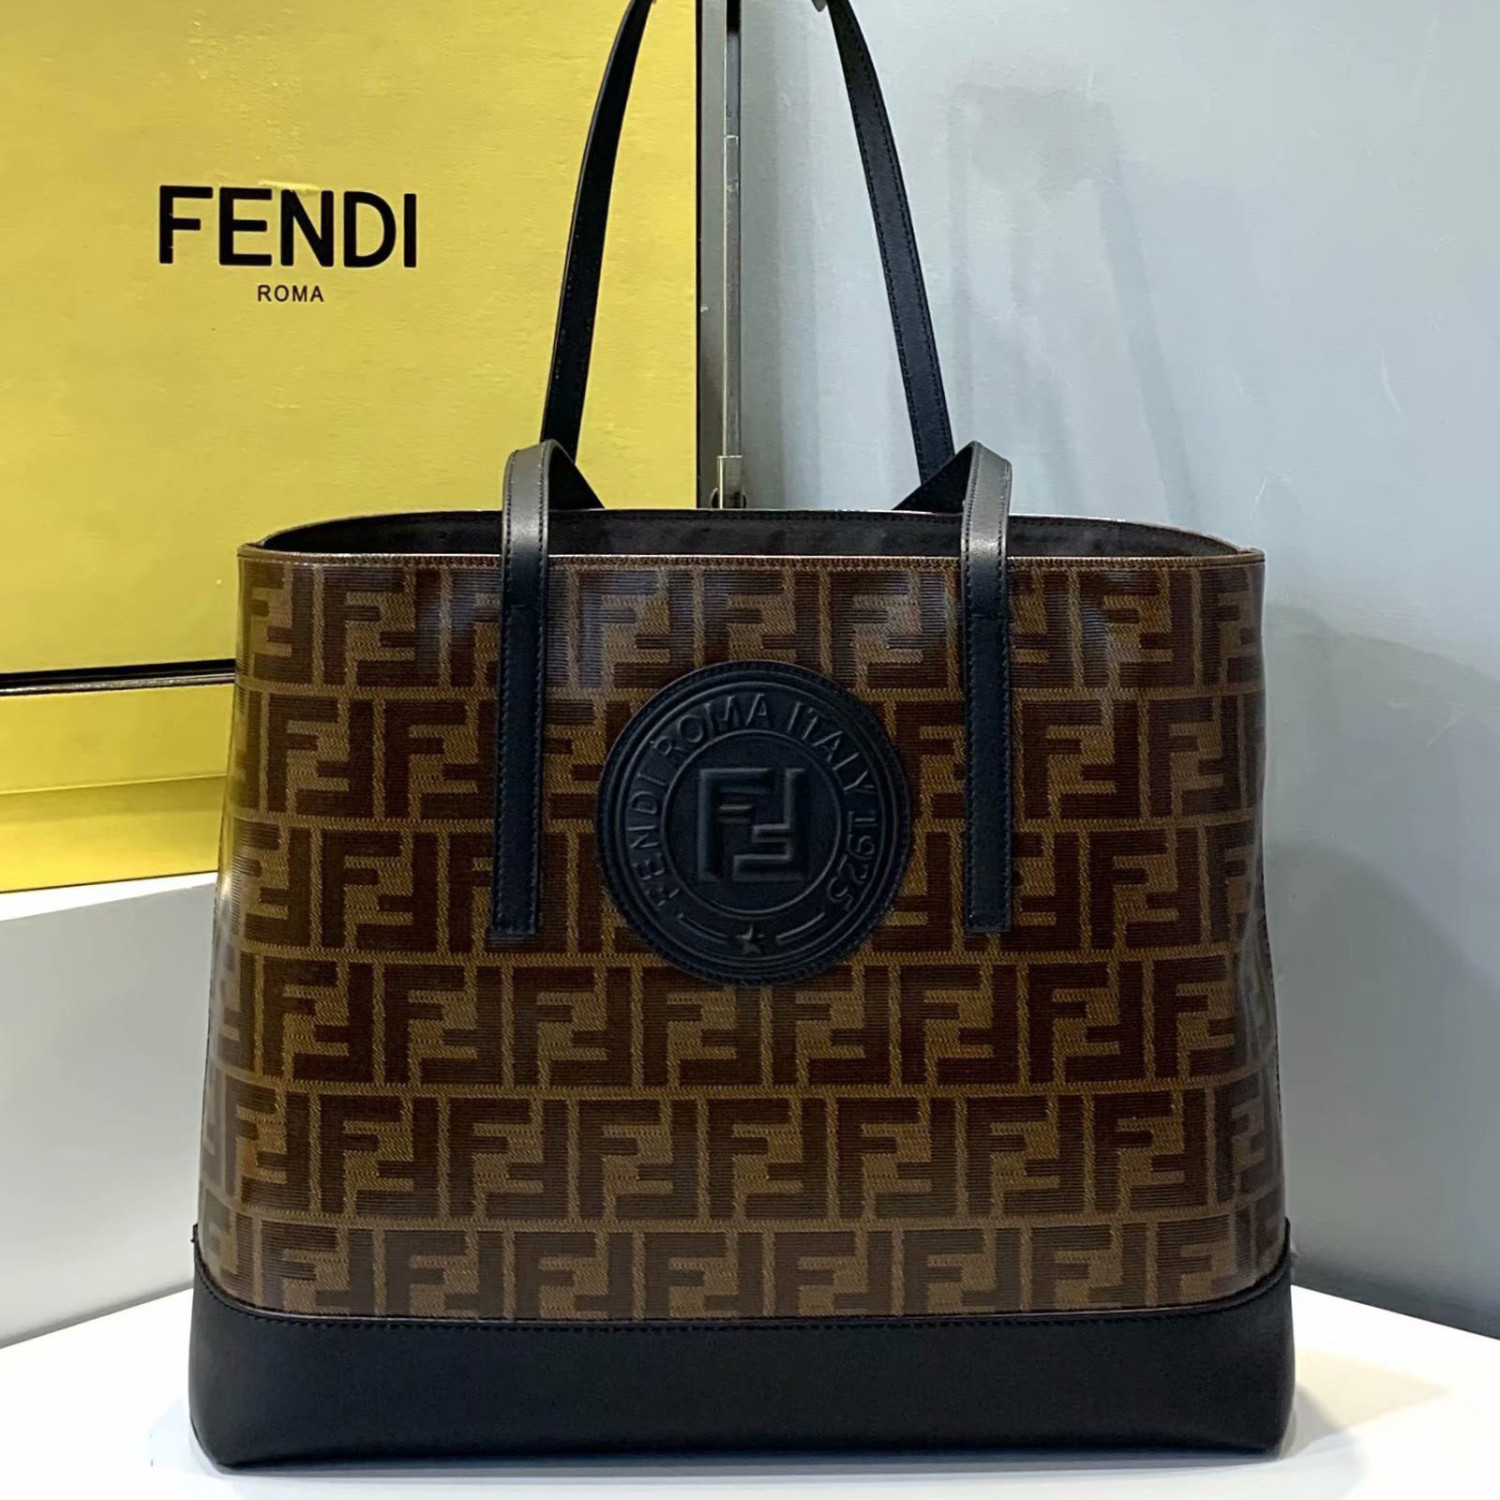 US$ 245 - Fendi original FF logo tote bag HL85 9101901 - 0